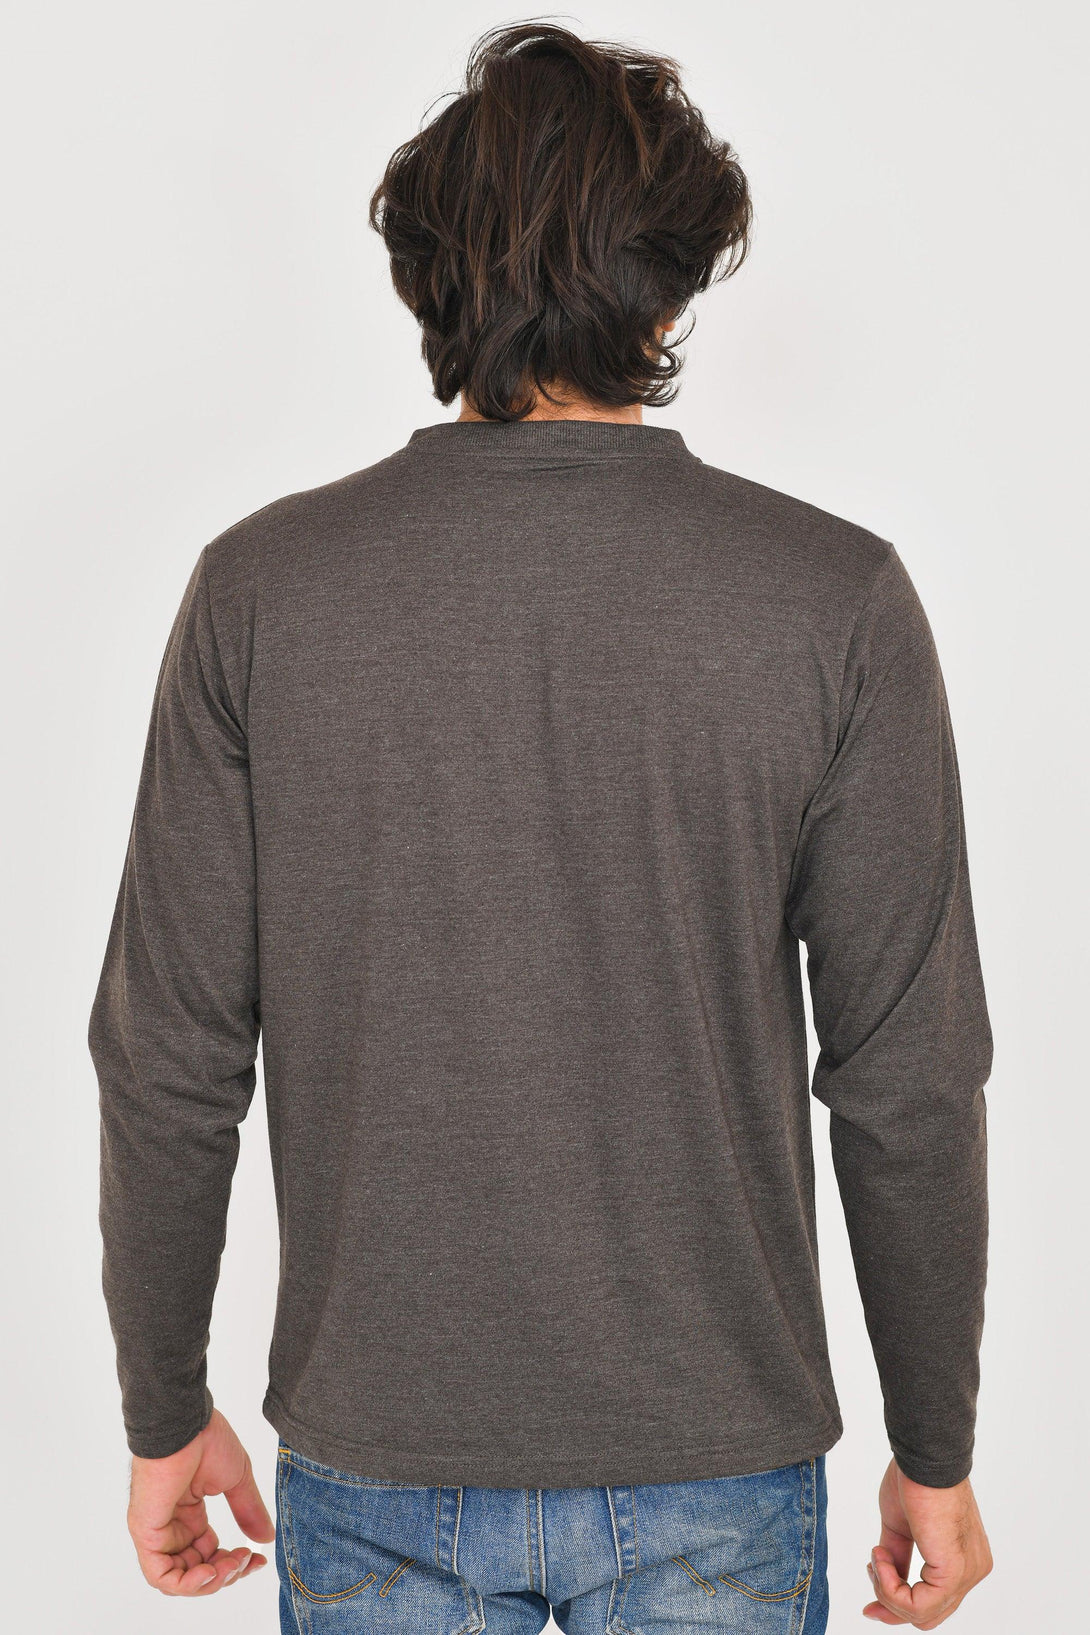 V-Neck Long Sleeve T-Shirts | TAN - SLATE - AQUA - CHARCOAL - Pack of 4 - FTS